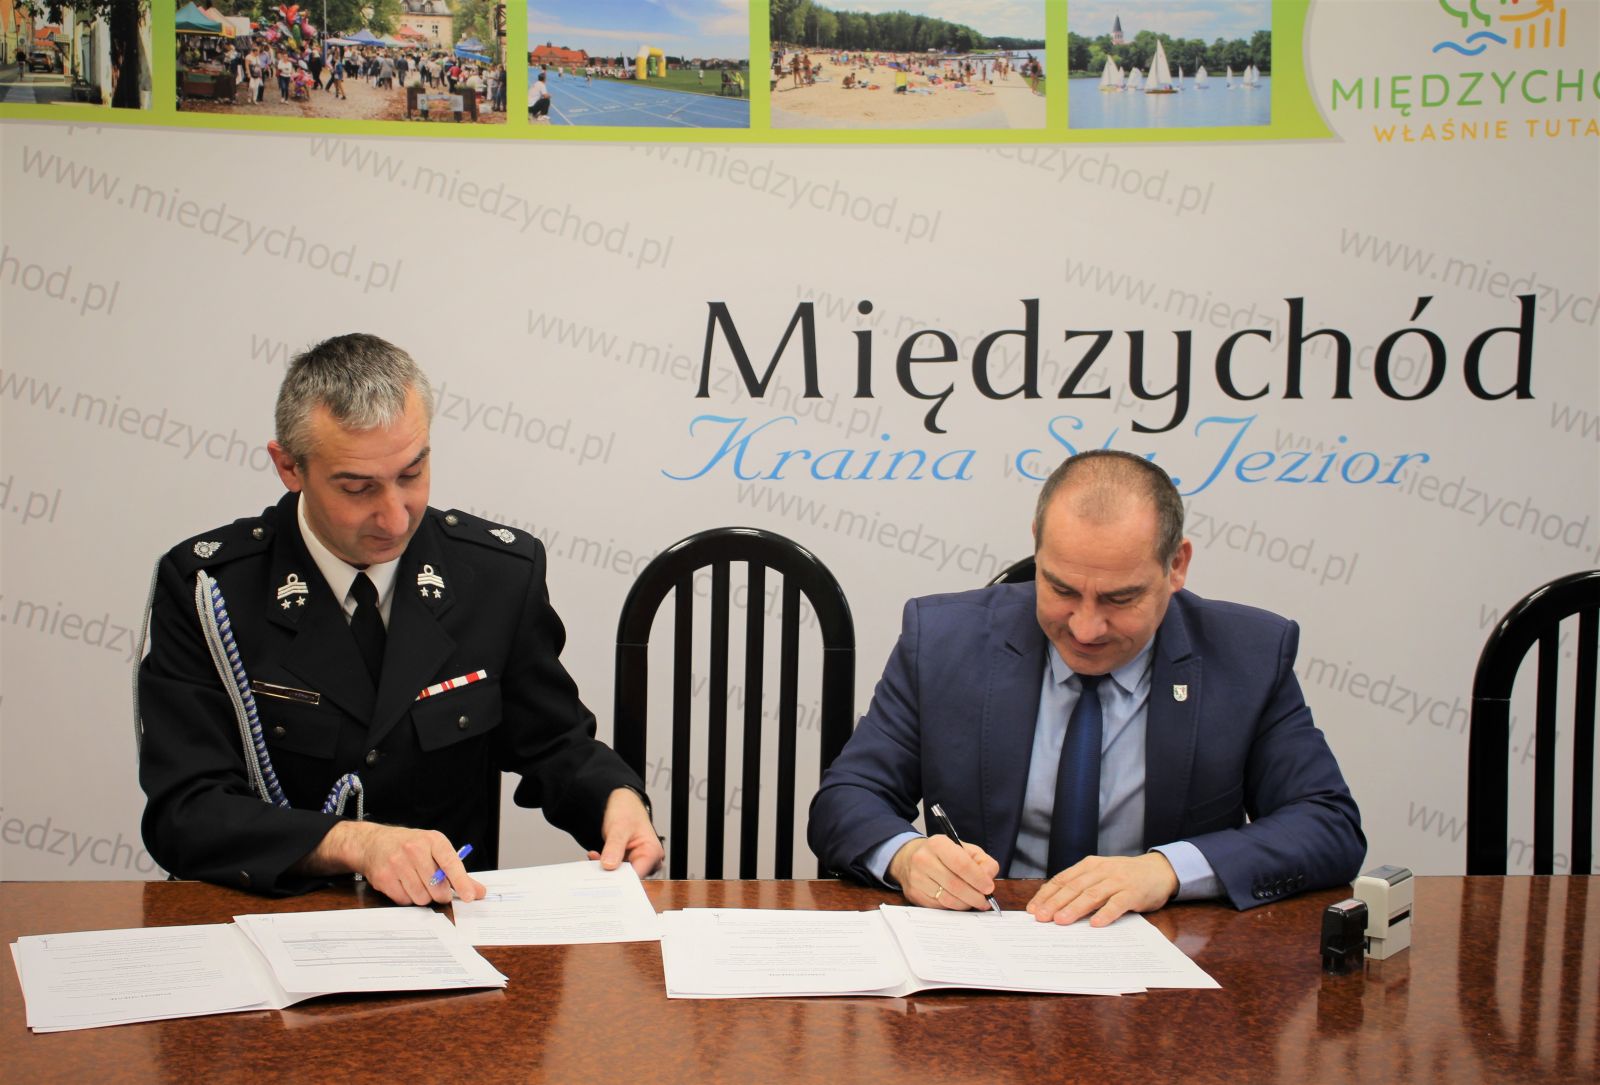 Na zdjęciu znajduje się Burmistrz Międzychodu Krzysztof Wolny oraz Prezes Ochotniczej Straży Pożarnej w Międzychodzie Radosław Gałężewski - podpisują dokumenty. 